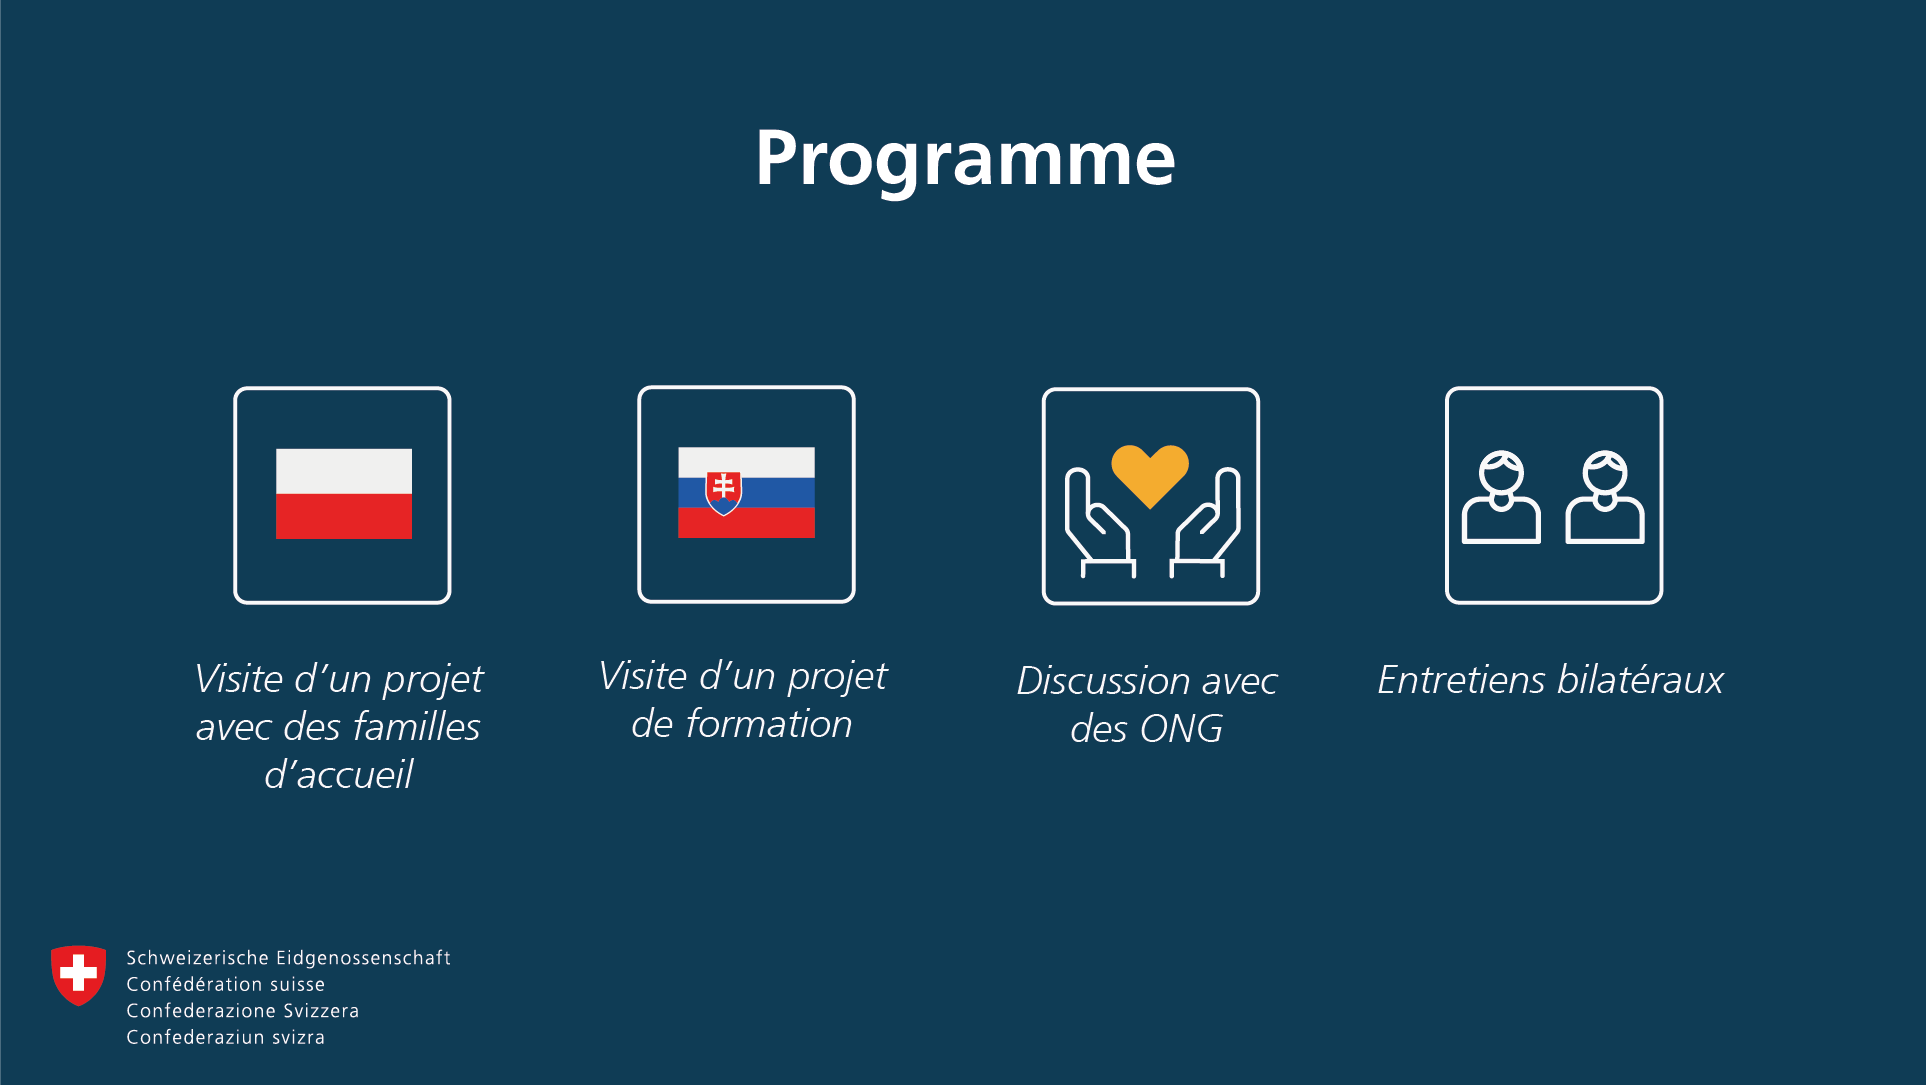 Programme : En Pologne, visite d'un projet avec des familles d'accueil, en Slovaquie, visite d'un projet de formation. En outre, échange avec des ONG et discussions bilatérales.